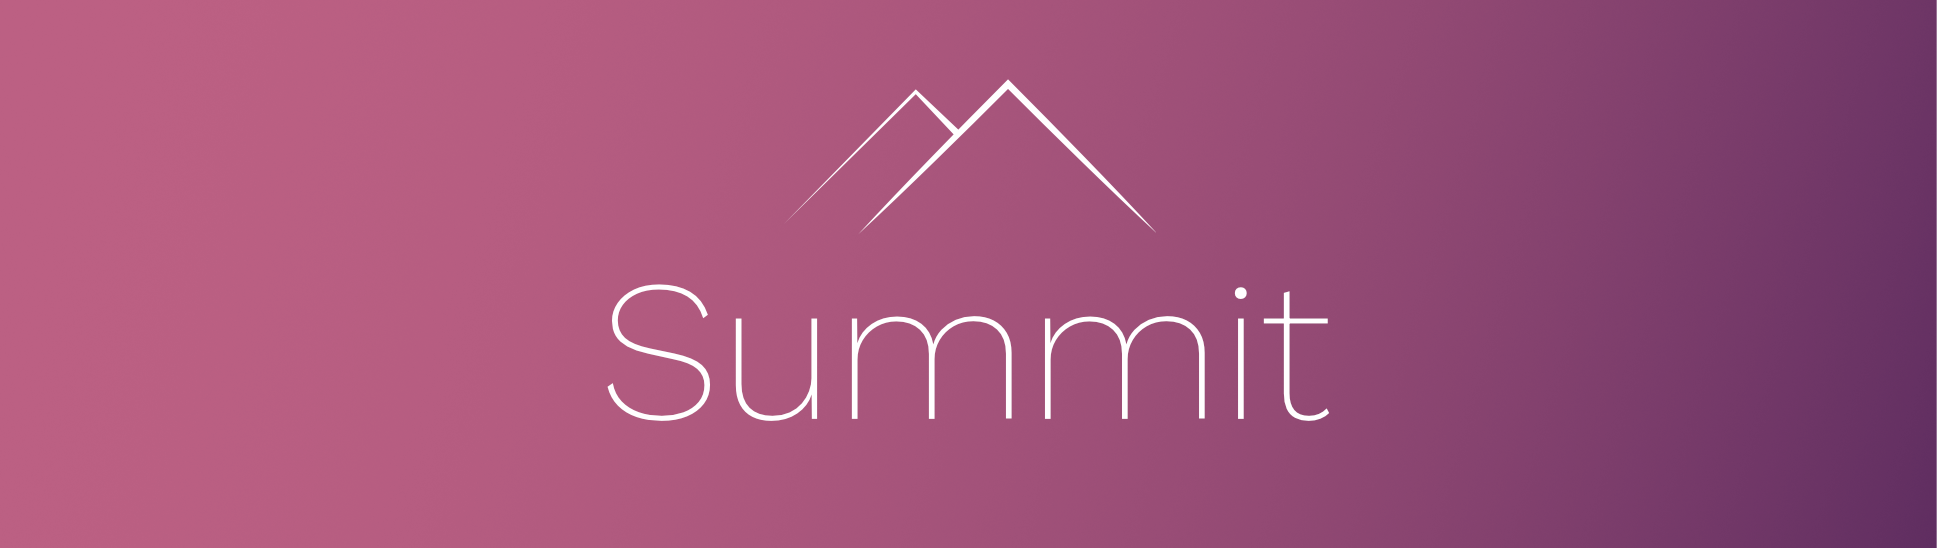 Summit banner